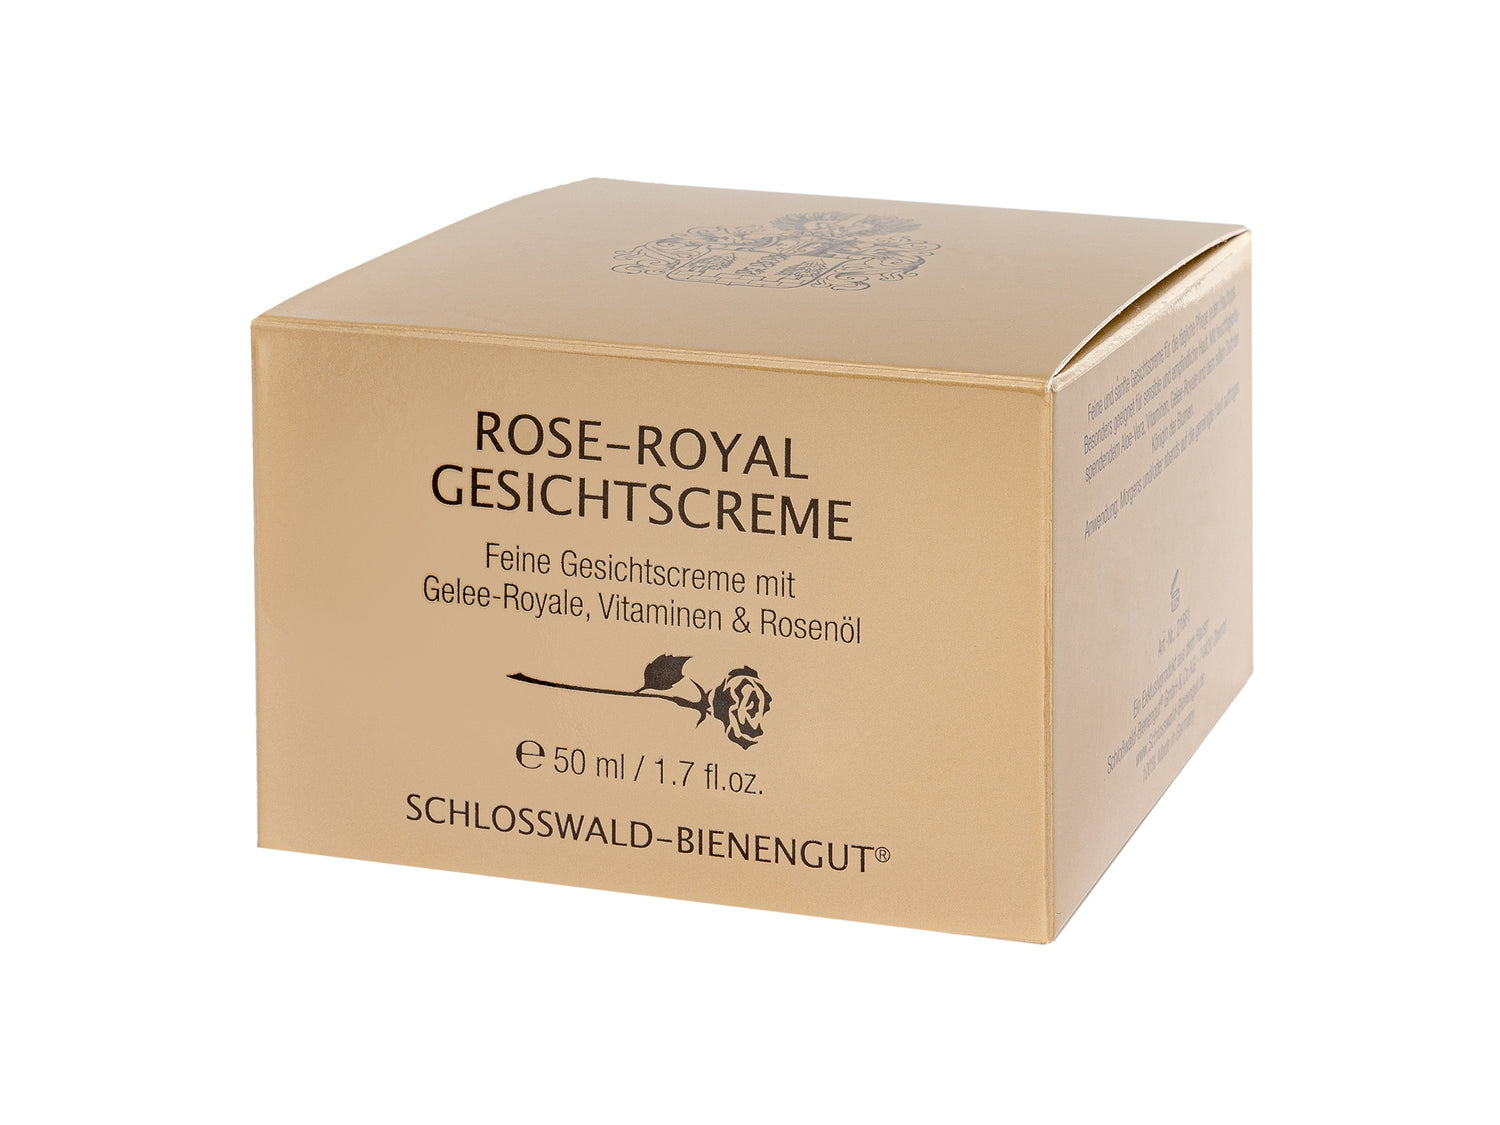 Naturkosmetik-rose-royal-mit-reichhaltigen-inhaltstoffen-bio-regional-aus-deutschland-jetzt-online-kaufen.